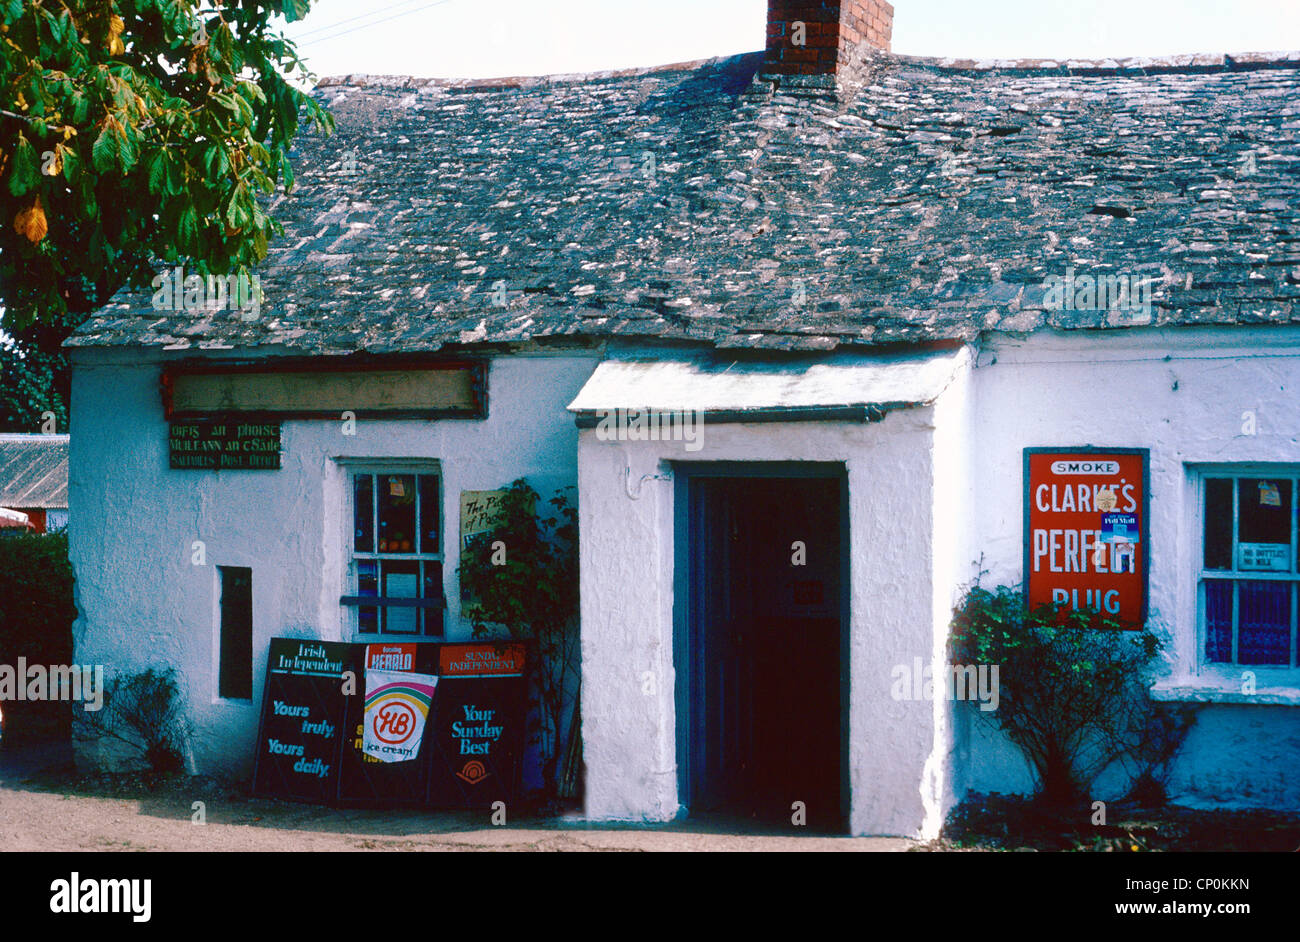 Un bureau de poste rural dans le village de SALTMILLS Wexford Irlande Banque D'Images